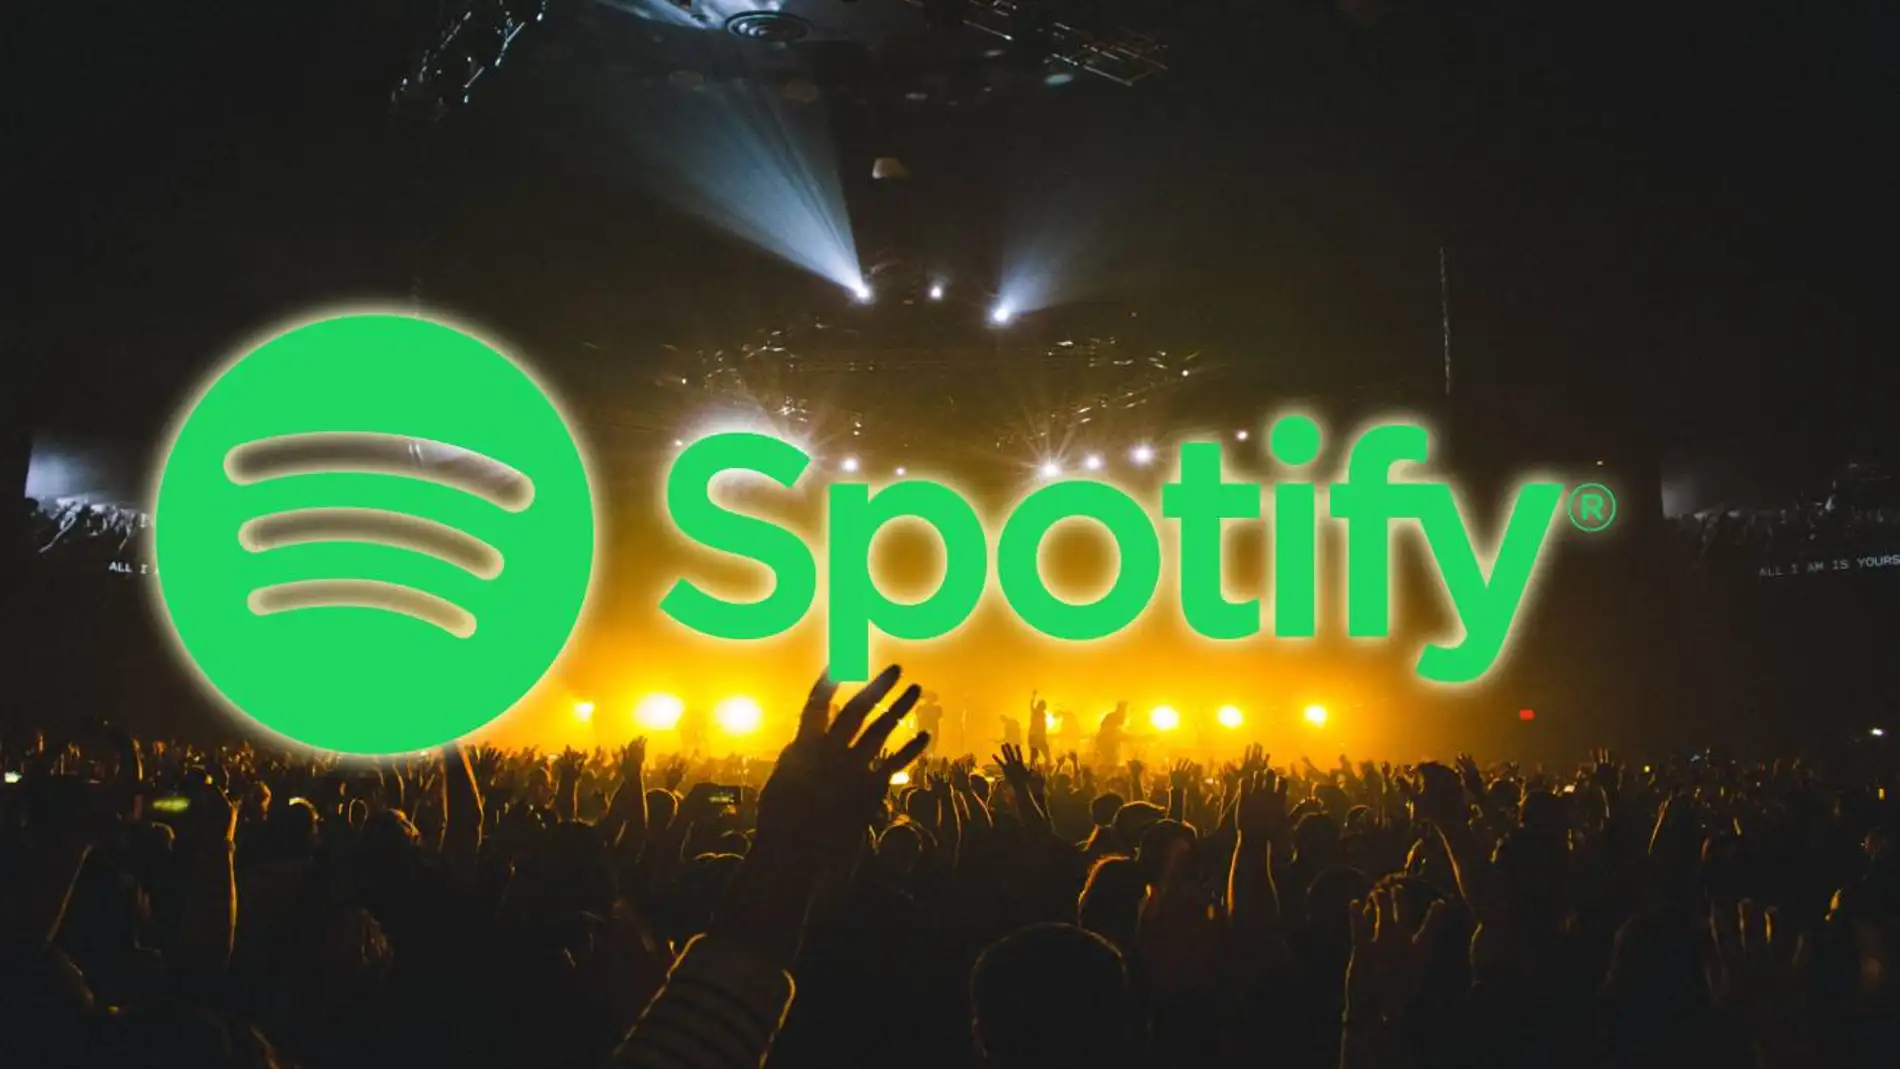 Descubre qué conciertos hay en tu ciudad usando Spotify